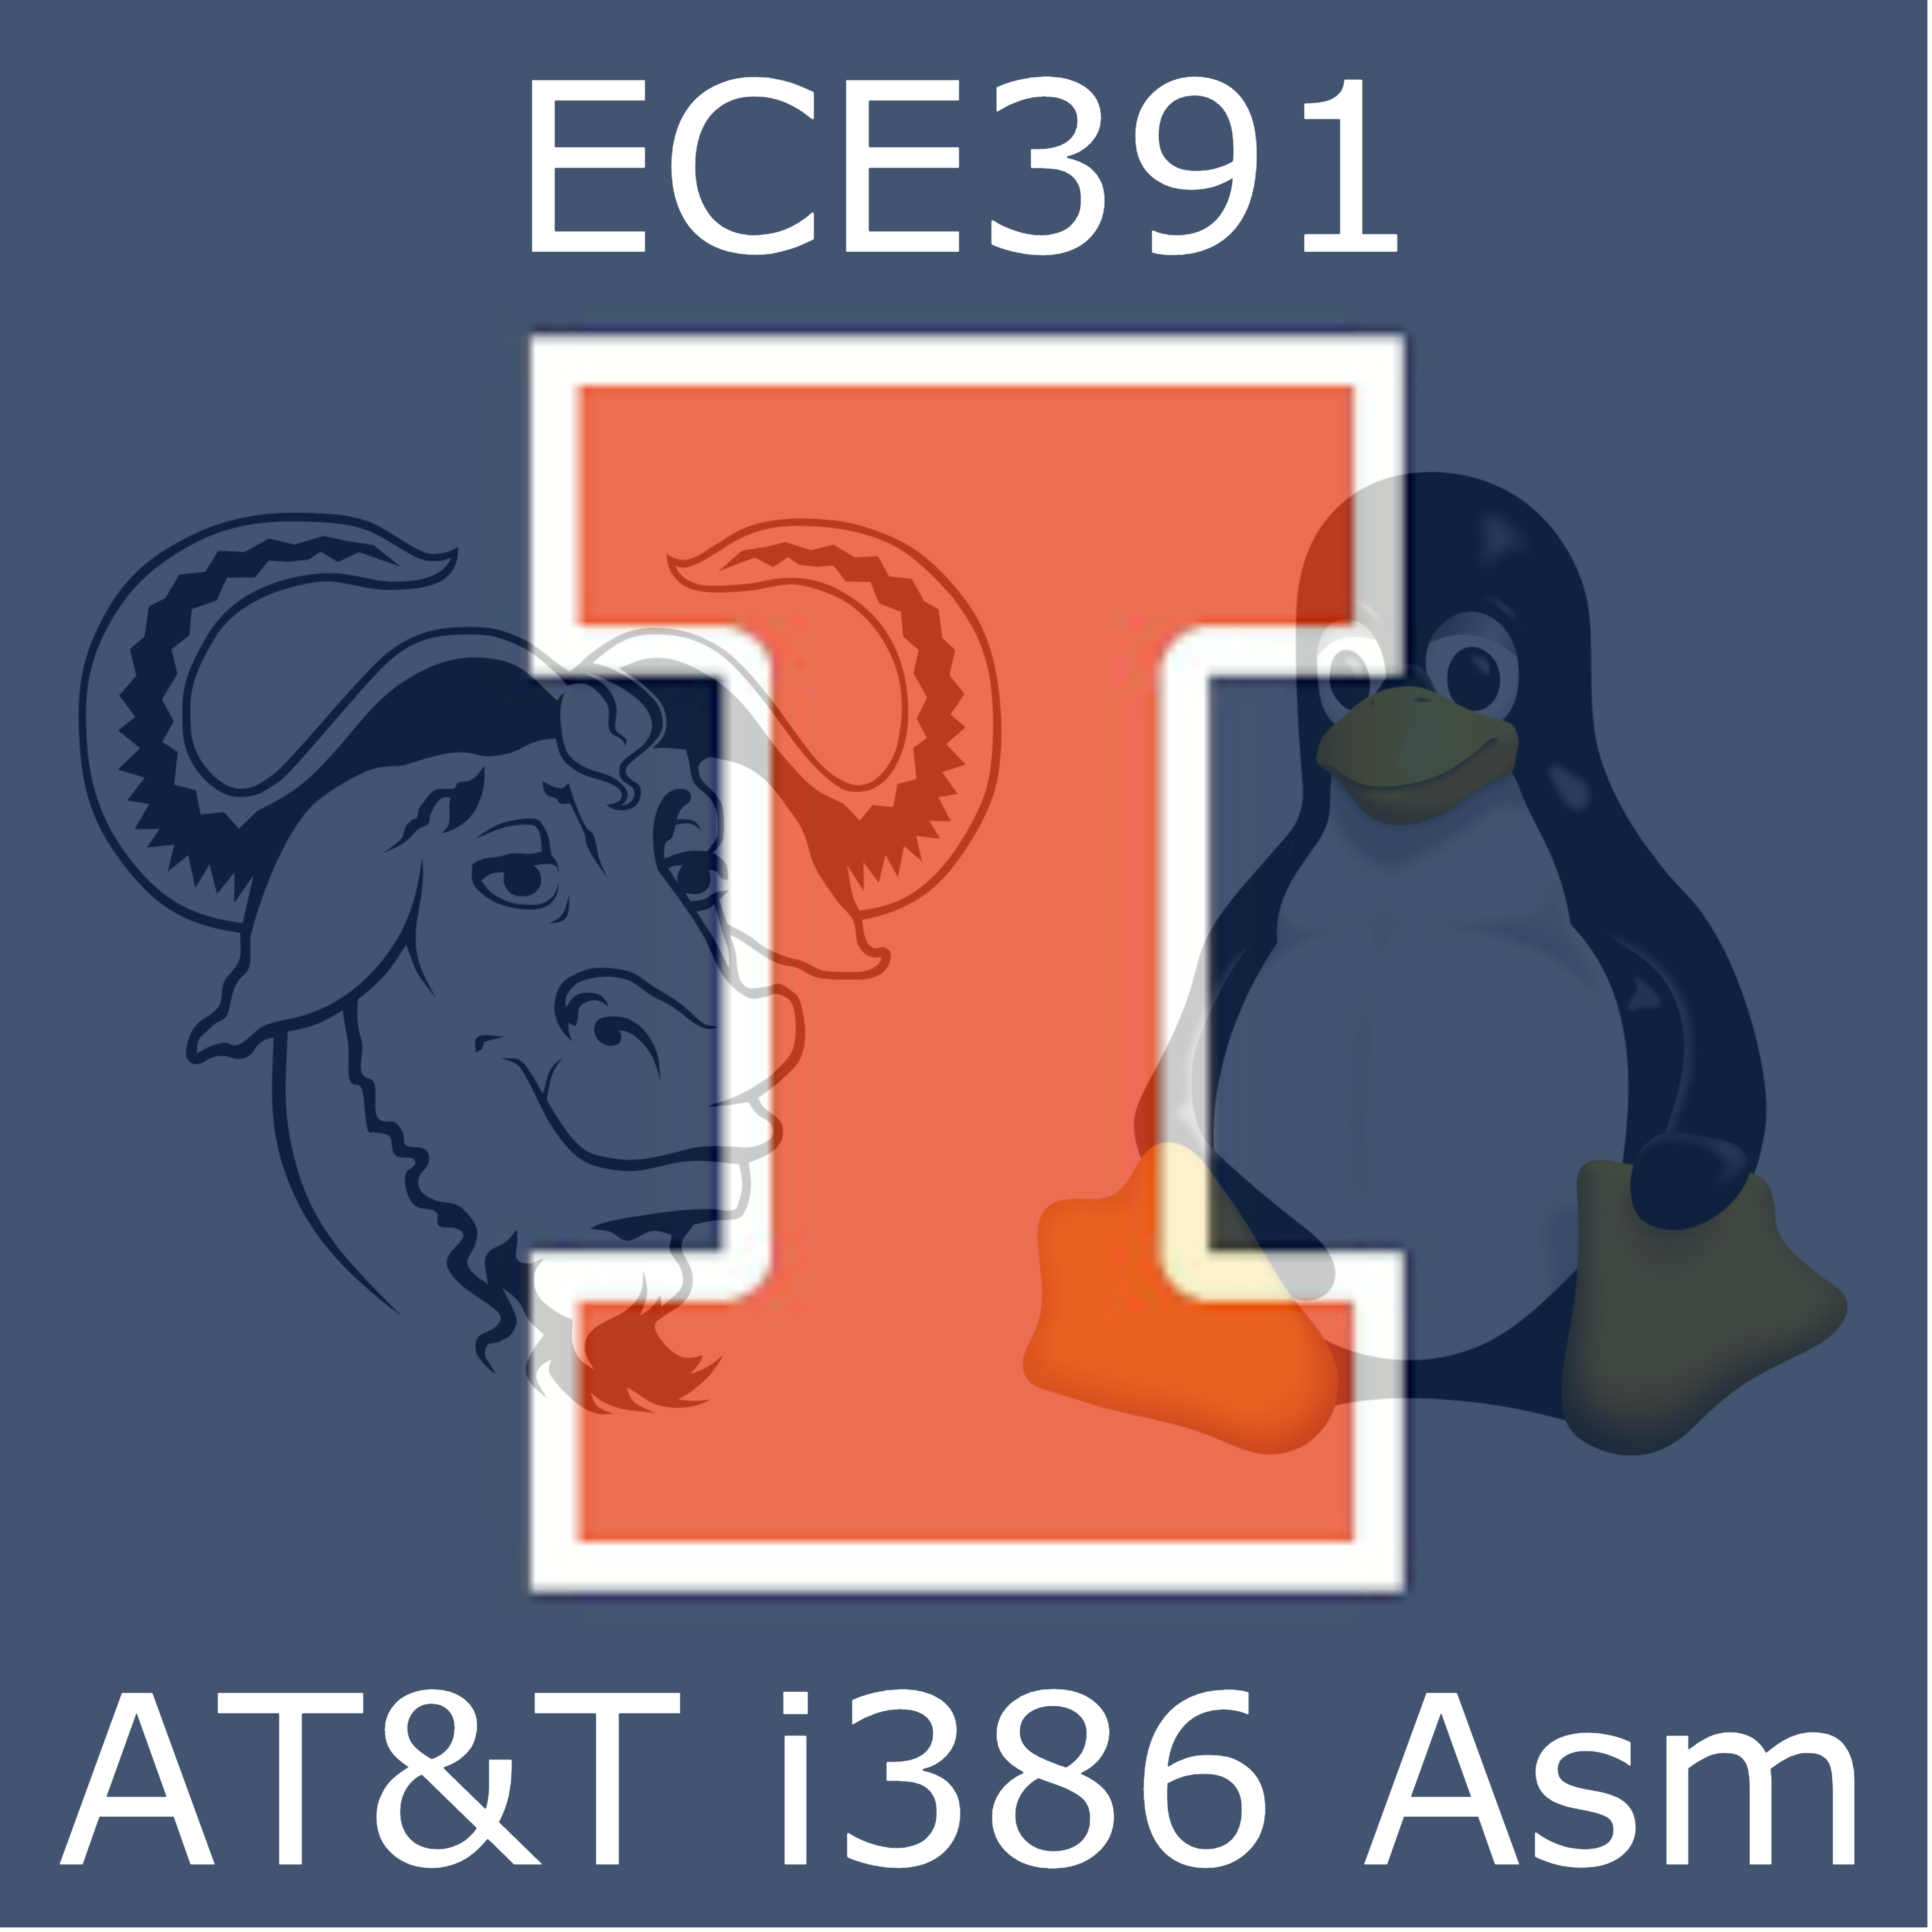 AT&T i386 IA32 UIUC ECE391 GCC Highlighting